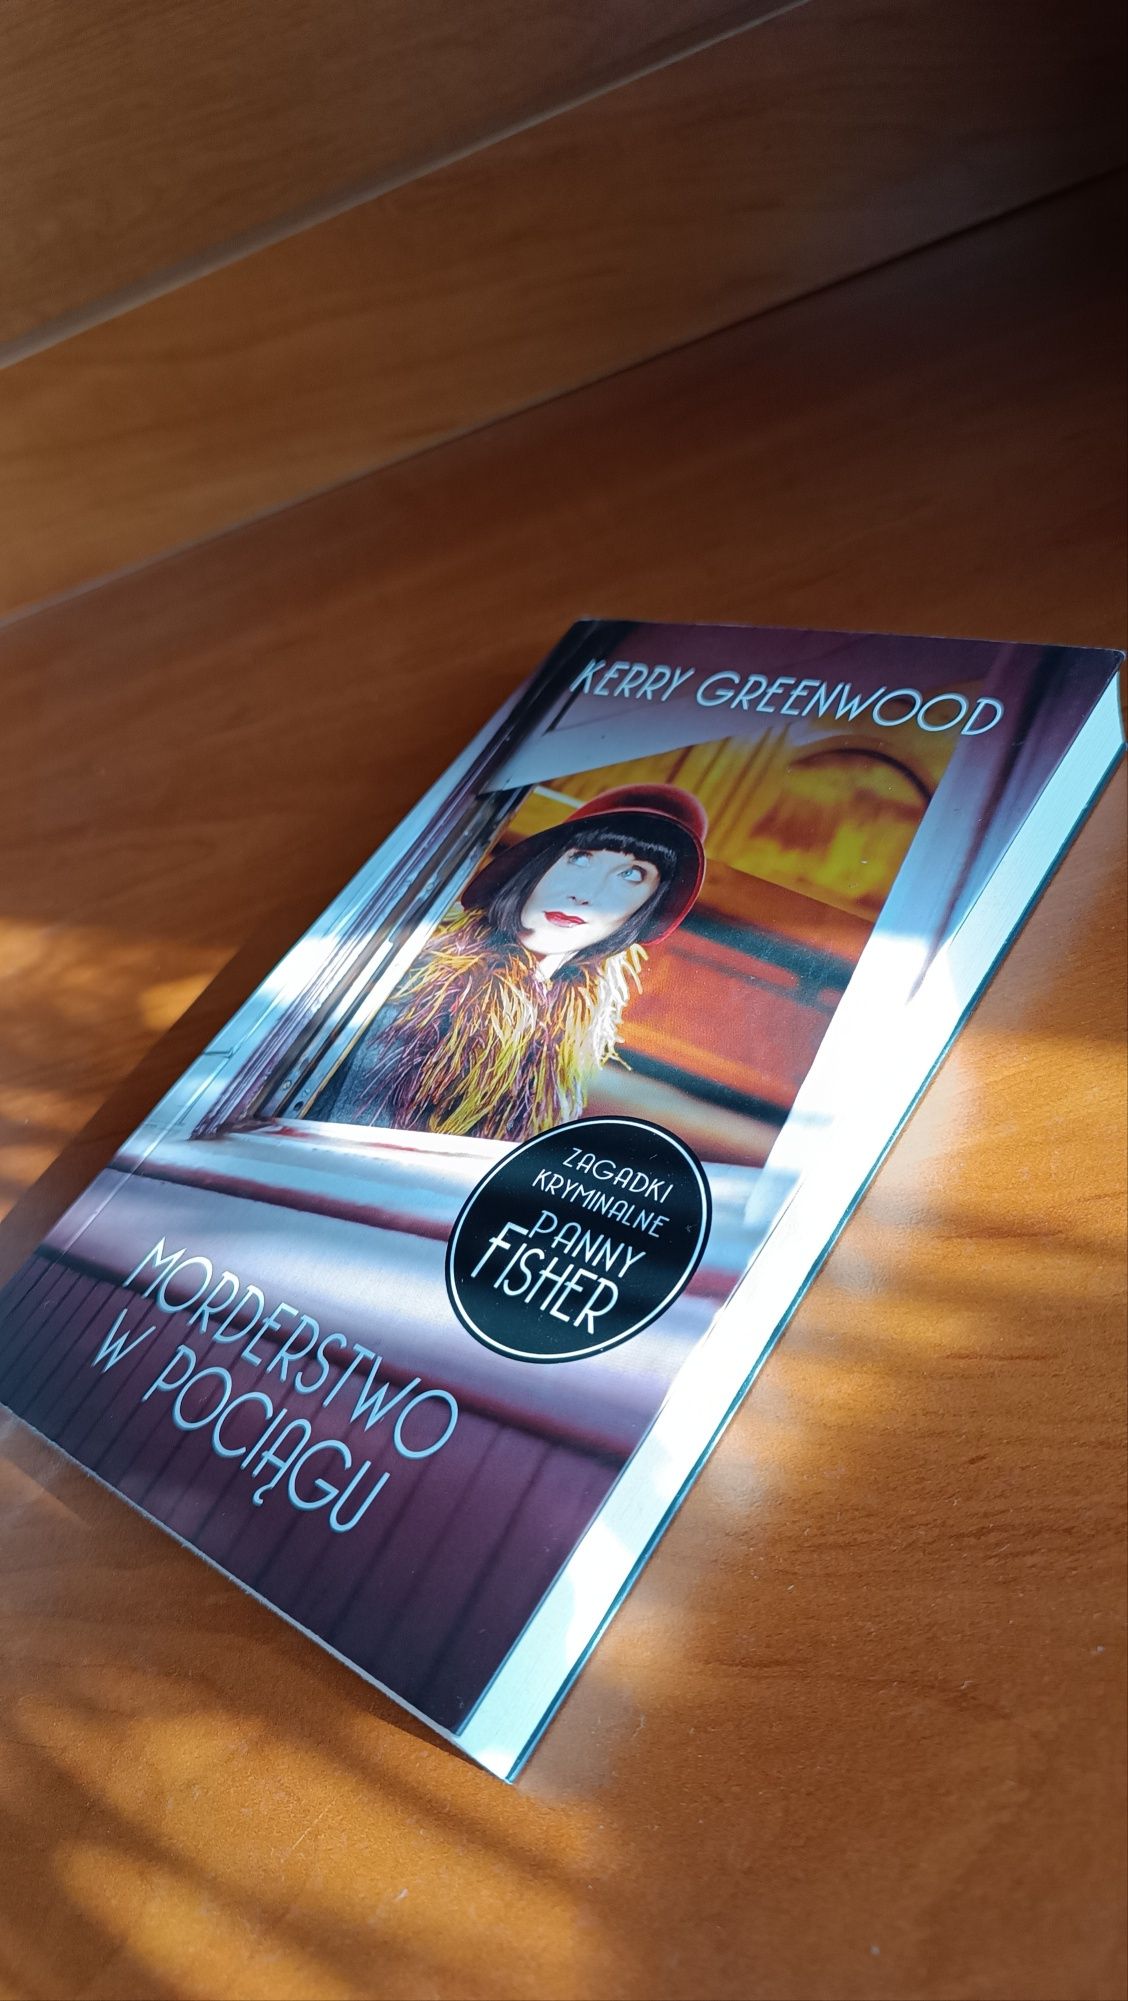 Książka "Morderstwo w pociągu" Kerry Greenwood